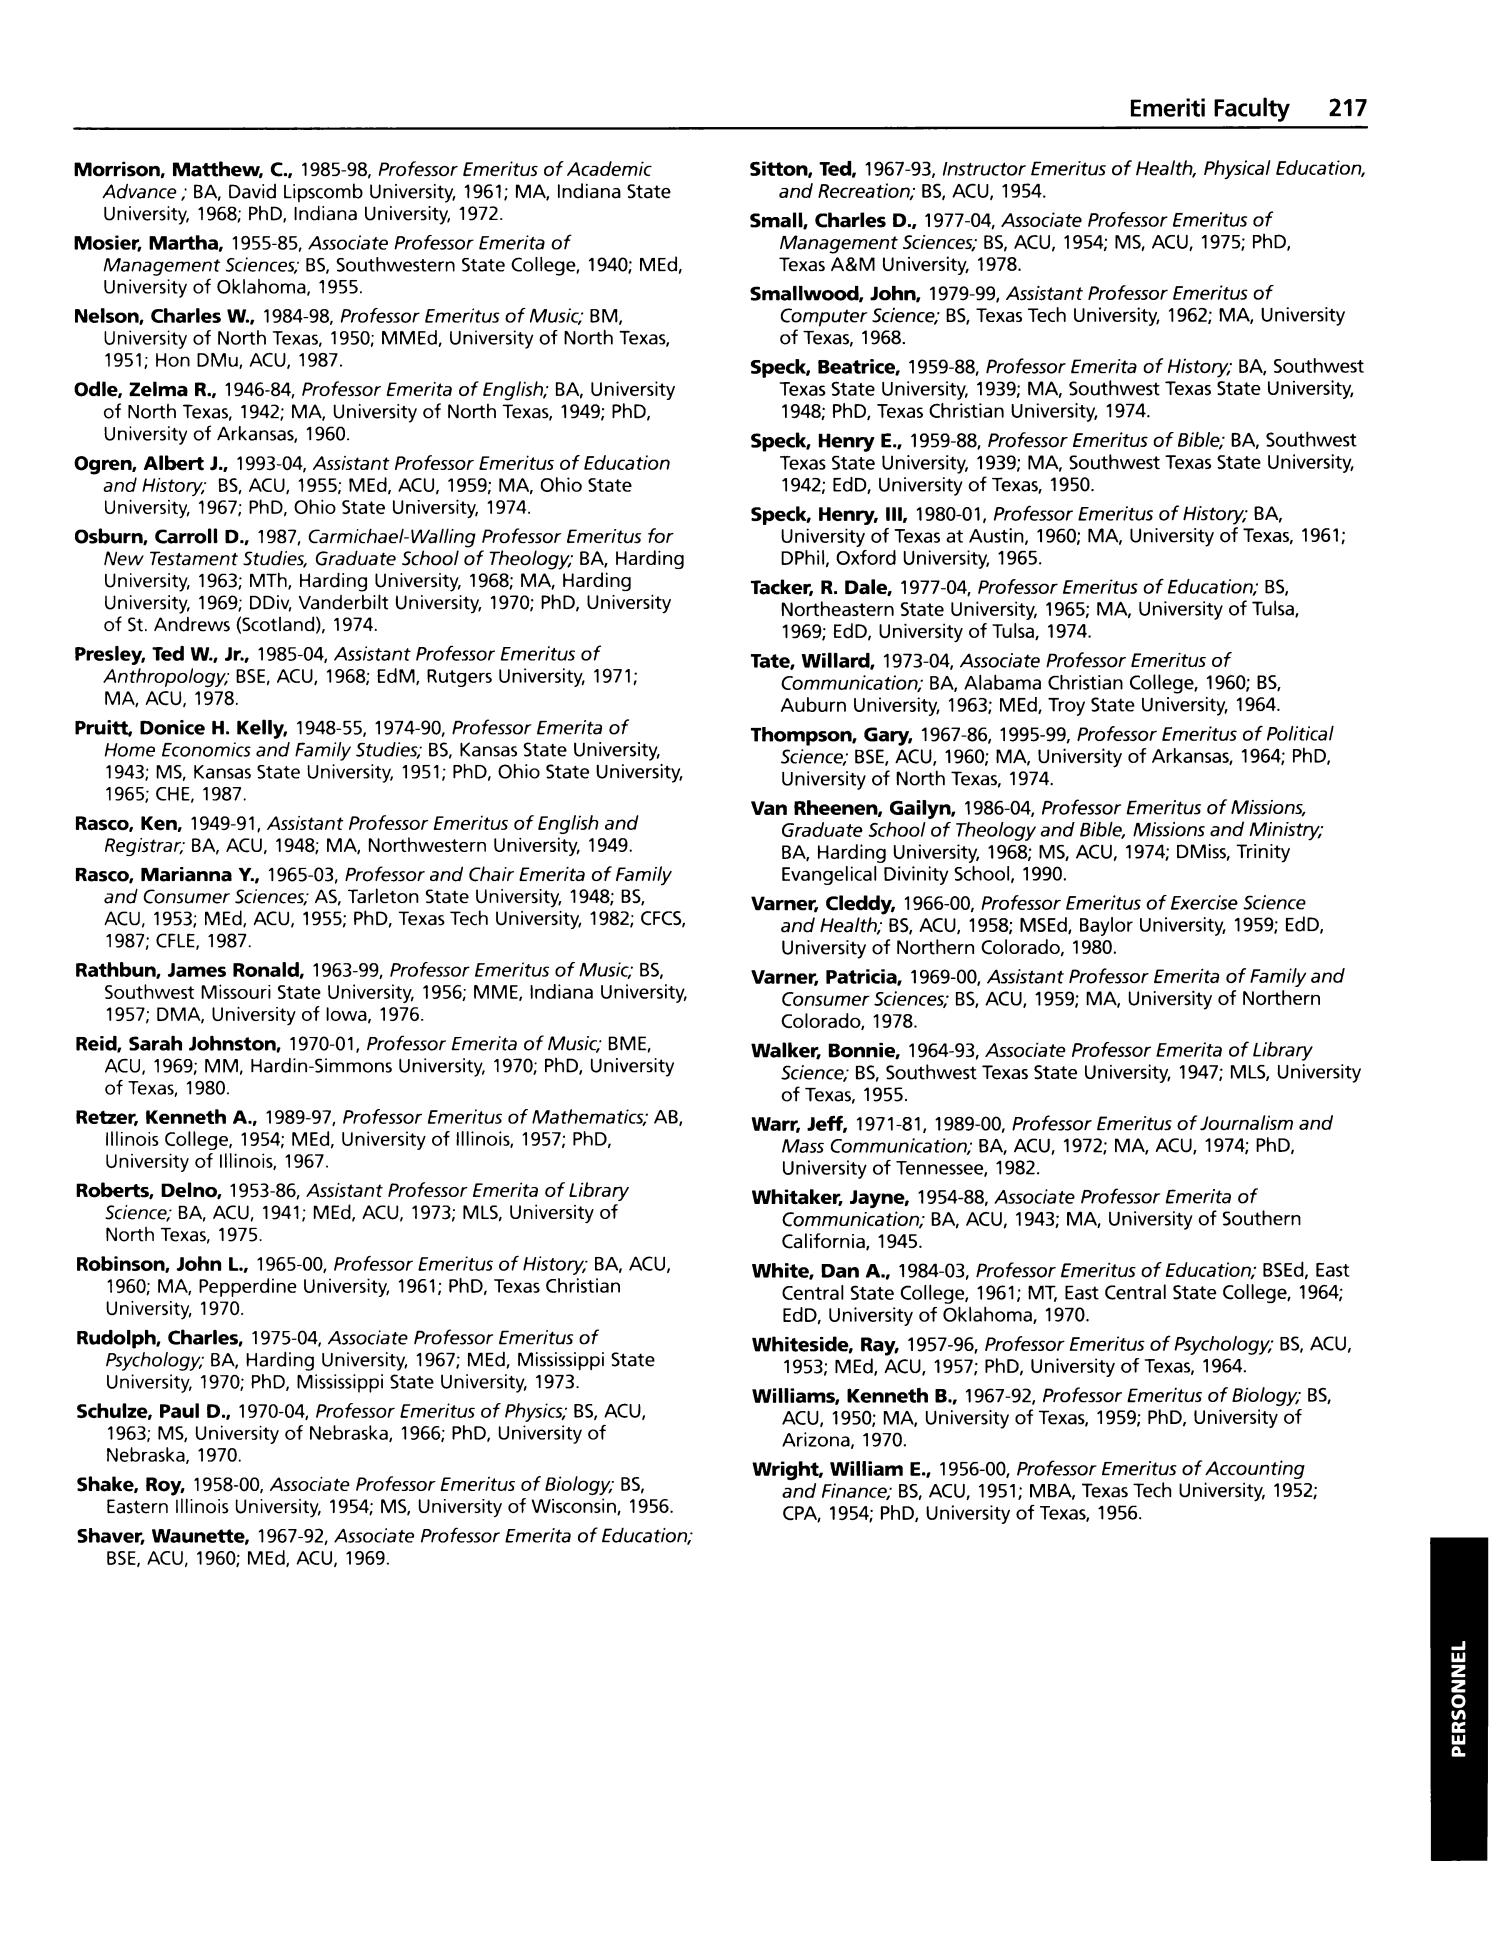 Catalog of Abilene Christian University, 2007-2008
                                                
                                                    217
                                                